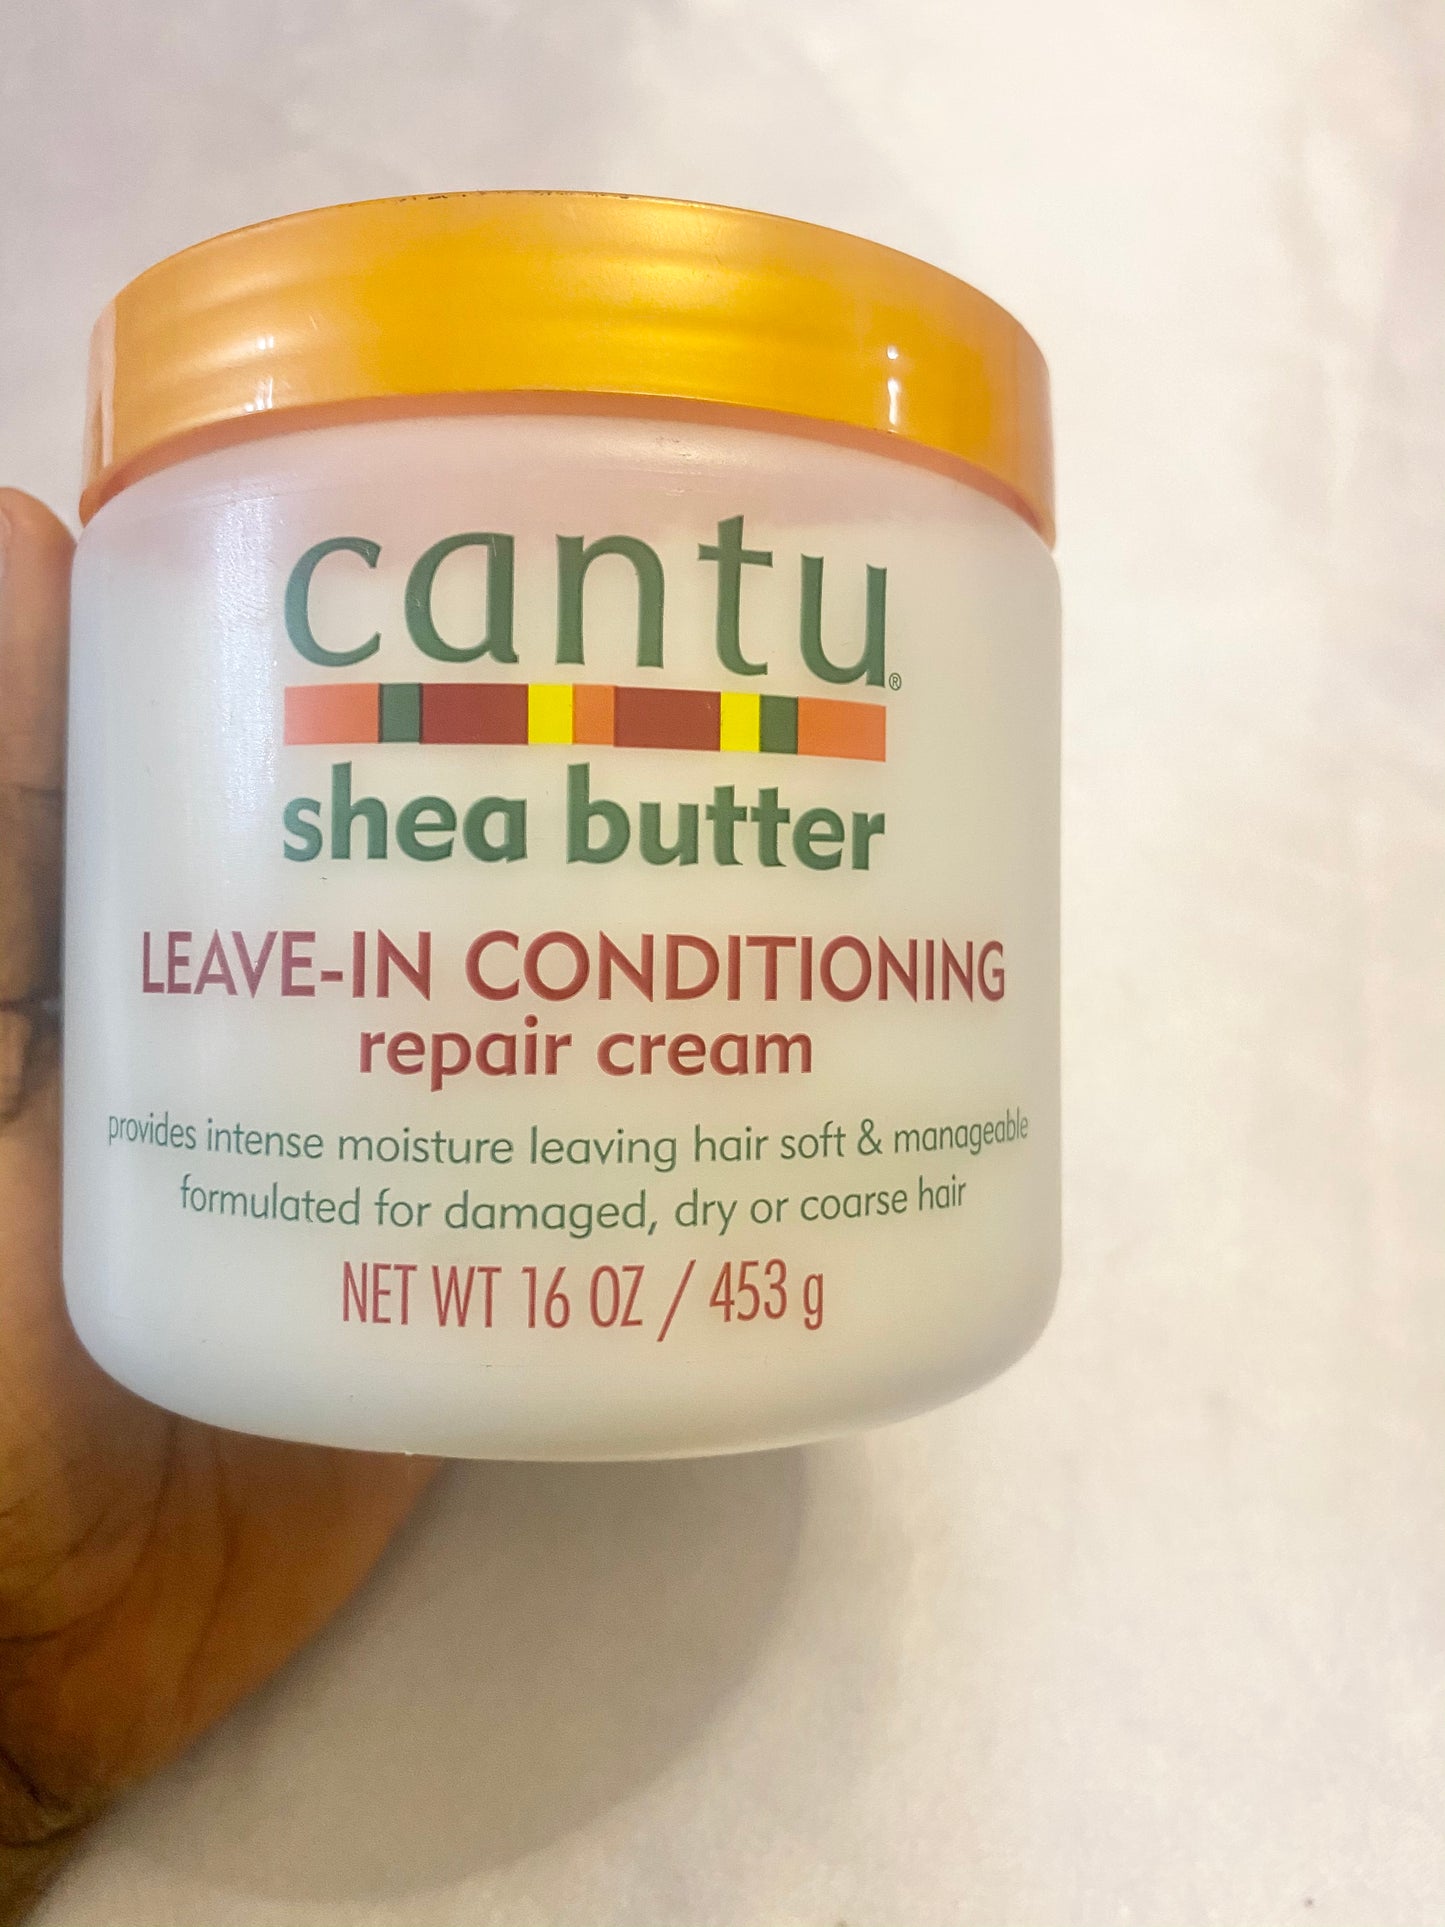 Cantu Shea Butter Leave In Conditioning Repair Cream